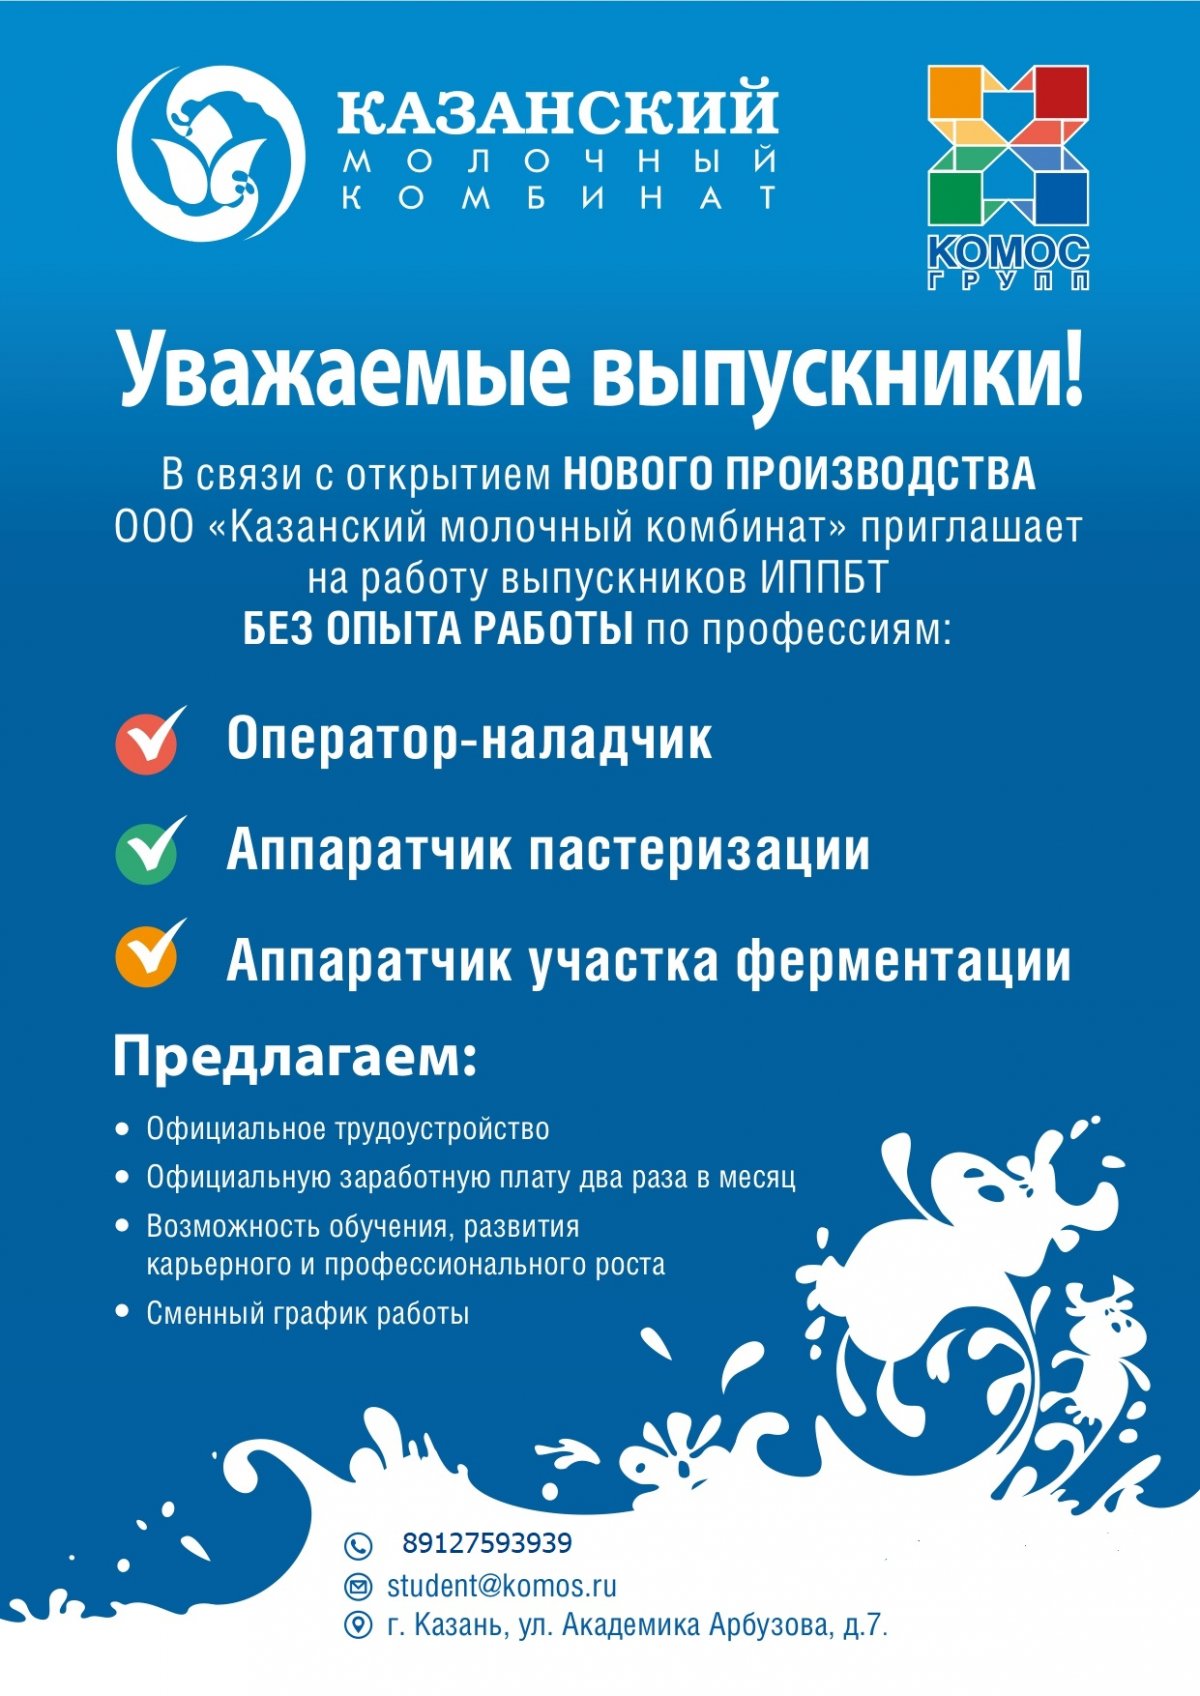 Агропромышленный холдинг "КОМОС ГРУПП" (www.komos.ru) приглашает на работу выпускников КНИТУ.